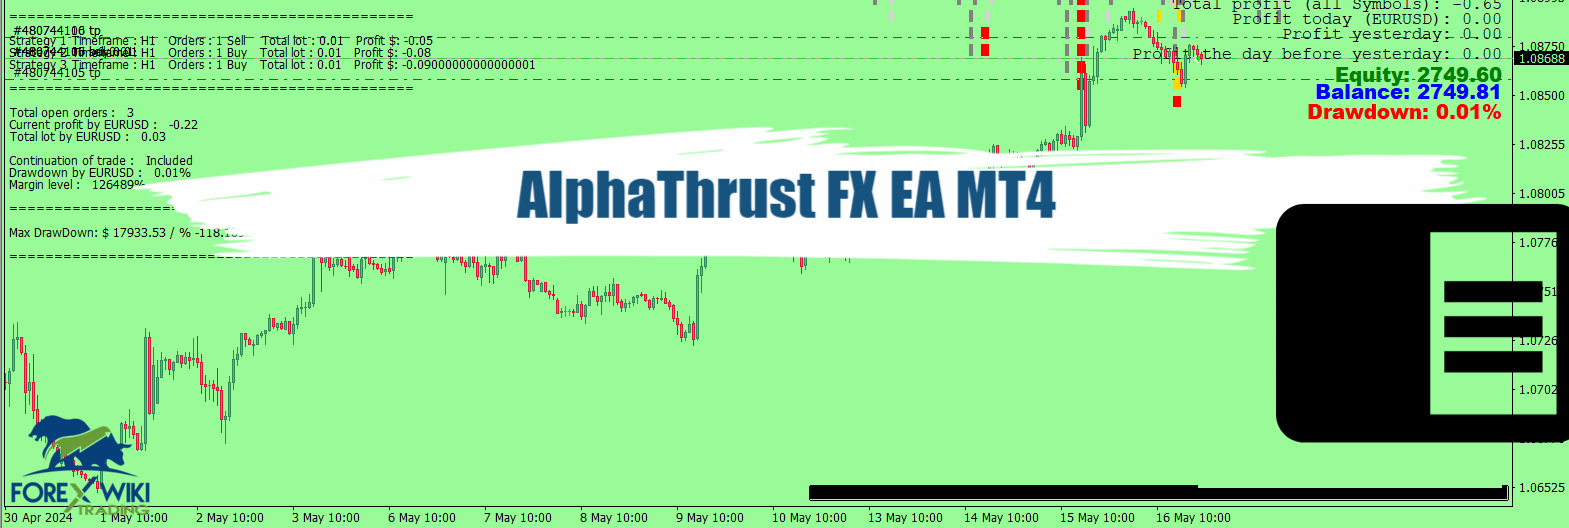 AlphaThrust FX EA MT4 - Free Download 23